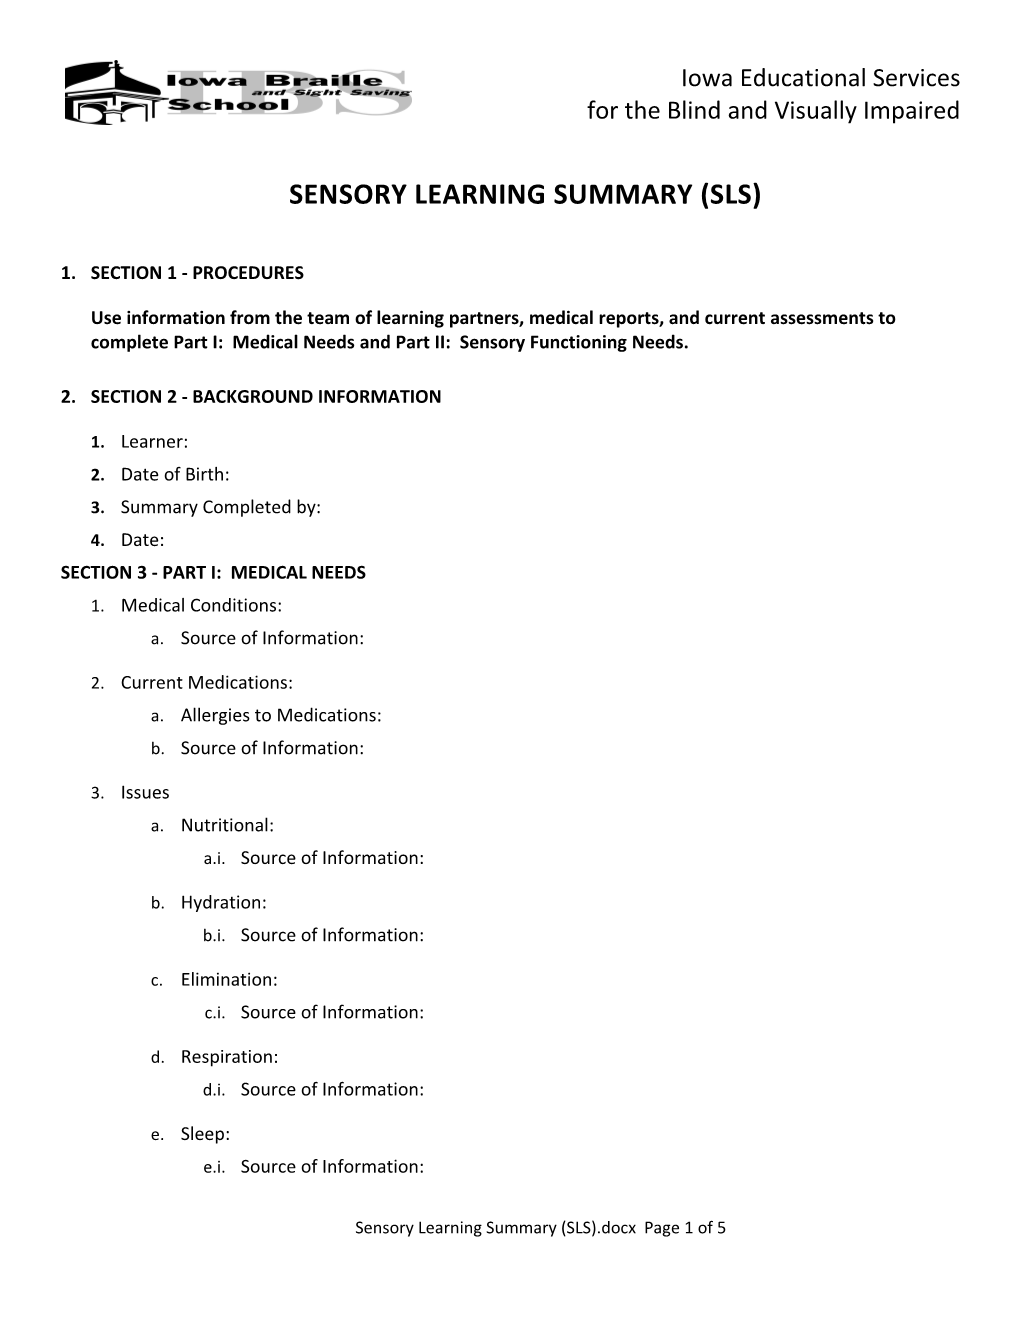 Sensory Learning Summary (Sls)